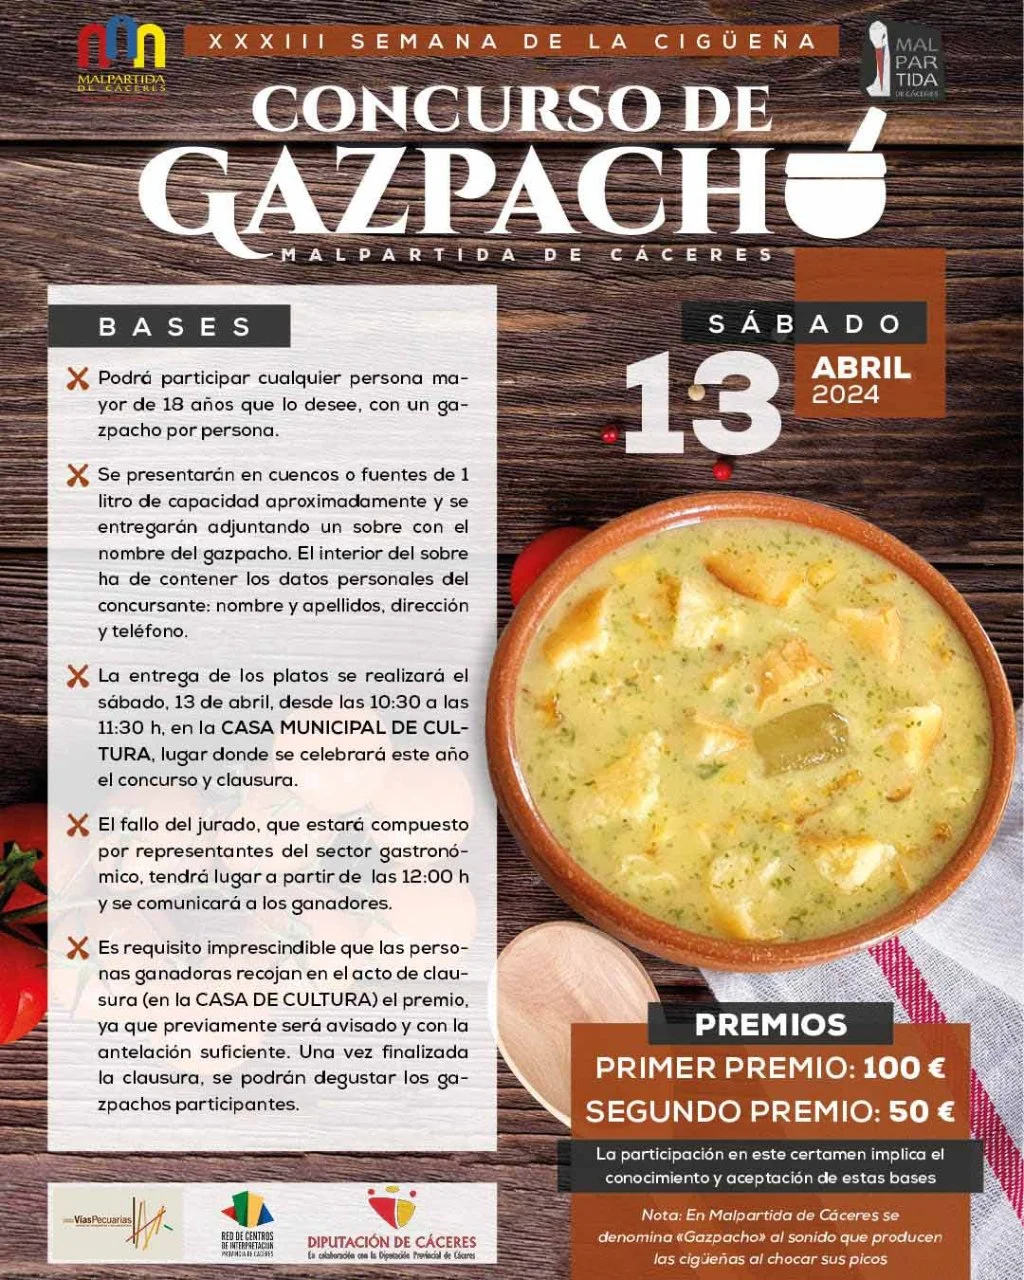 Concurso de gazpacho 2024 en Malpartida de Cáceres